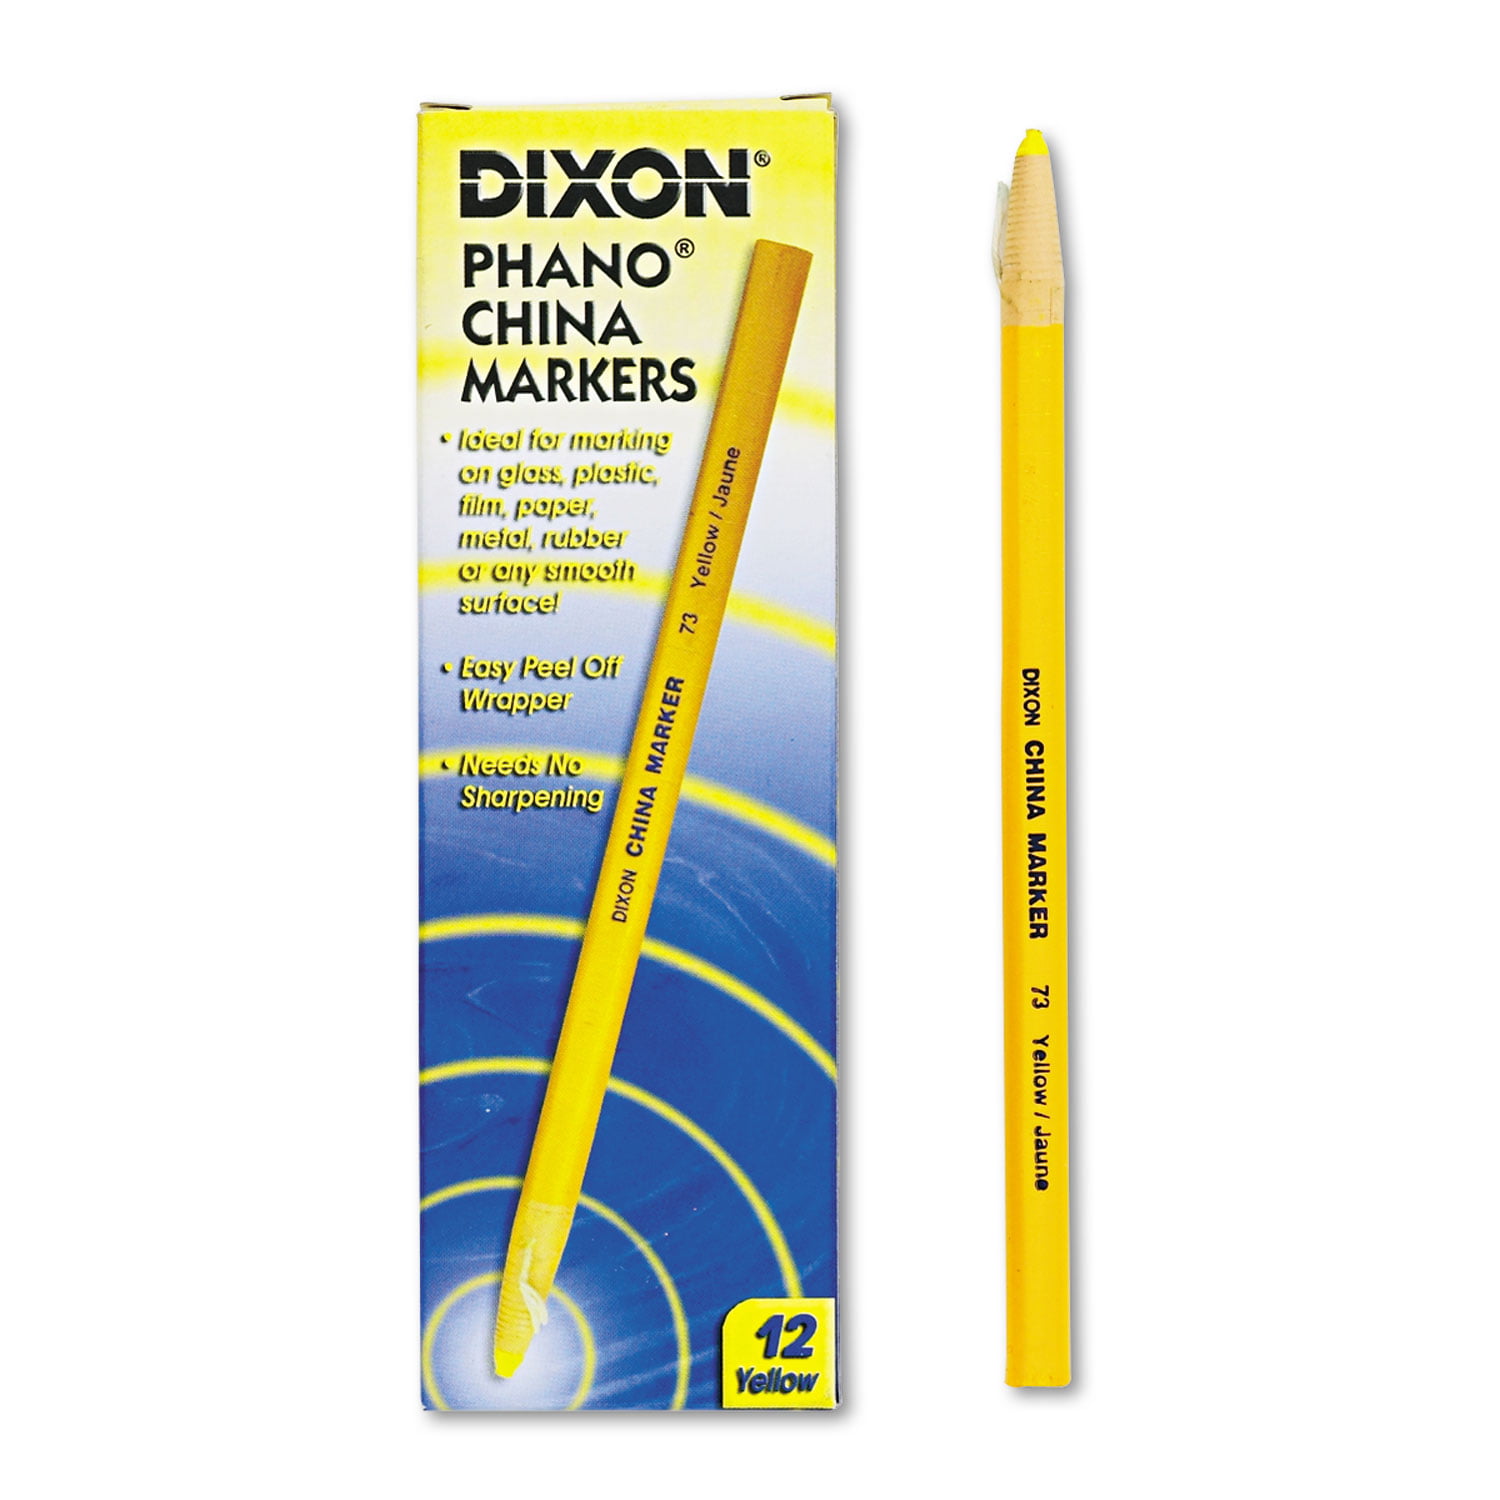 Phano China Markers, Yellow, Pack of 12